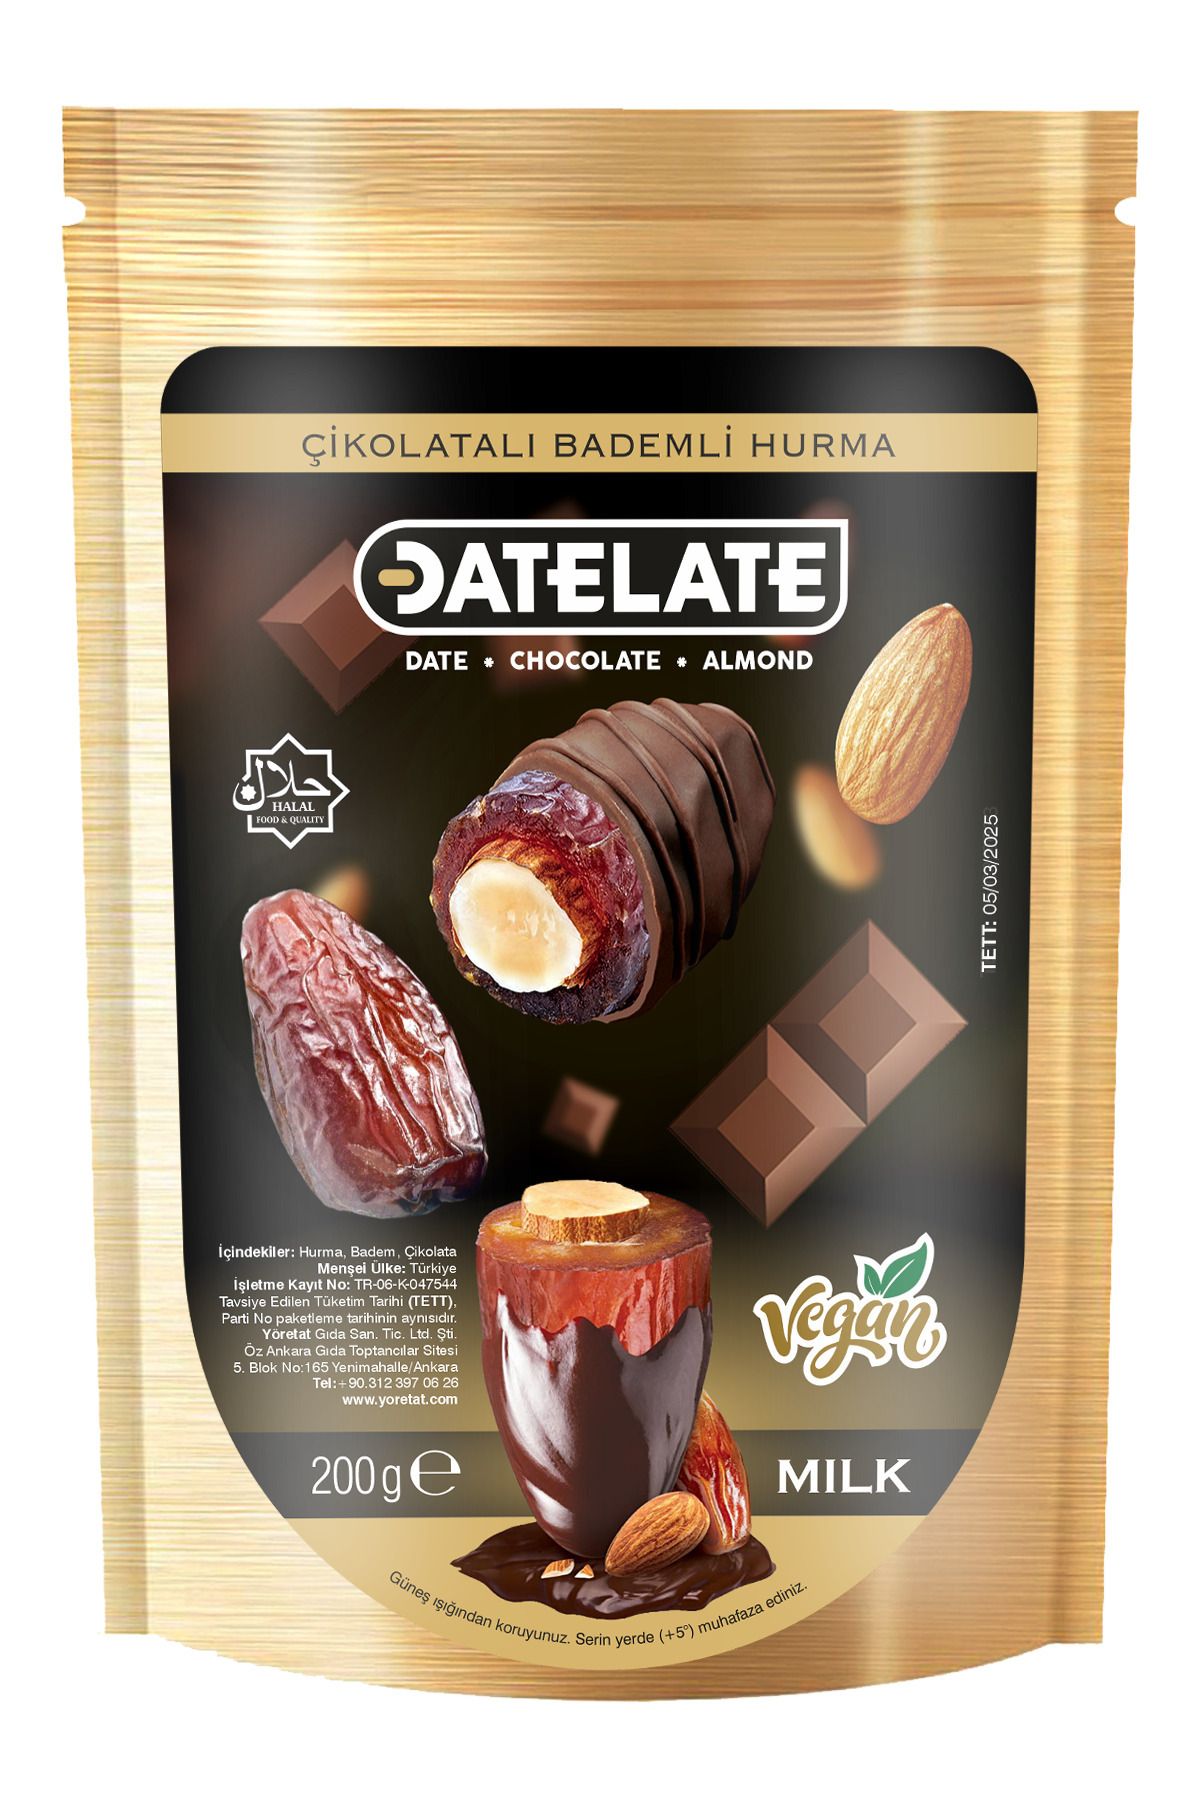 CHOCODATE Datelate Çikolatalı Bademli Hurma - Sütlü 200 gr.